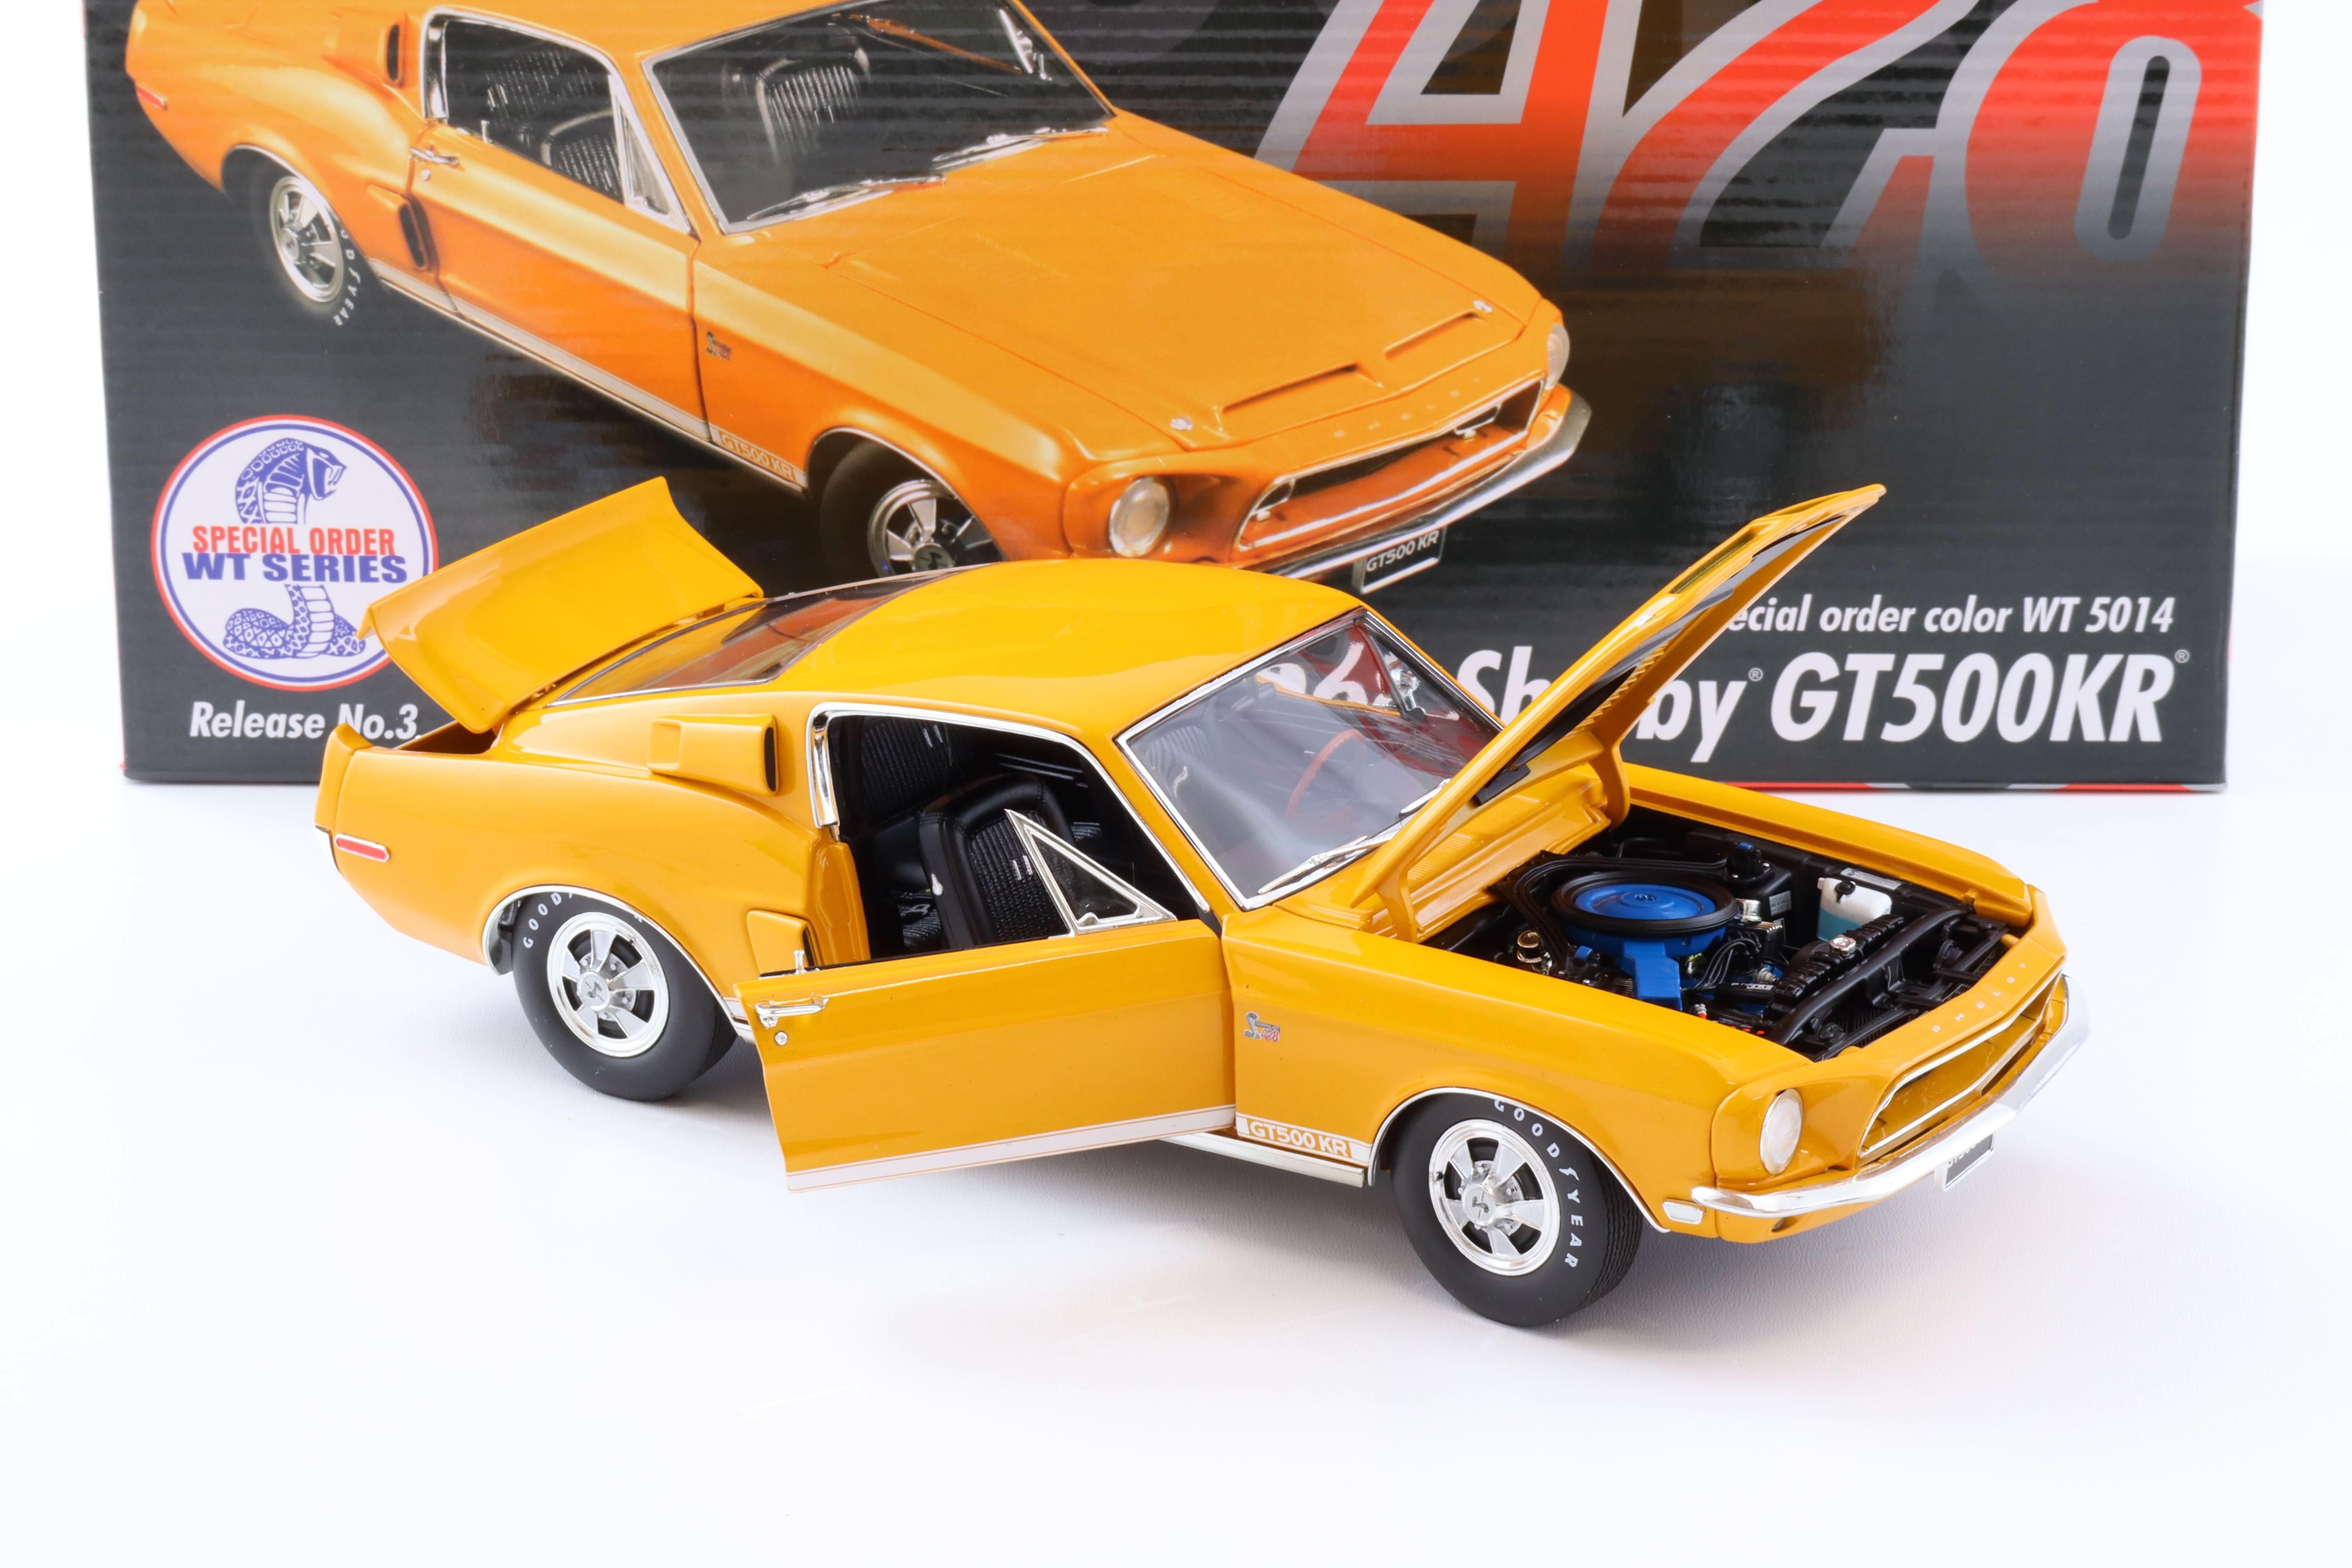 1:18 ACME 1968 Shelby GT500KR orange WT5014 Release No. 3